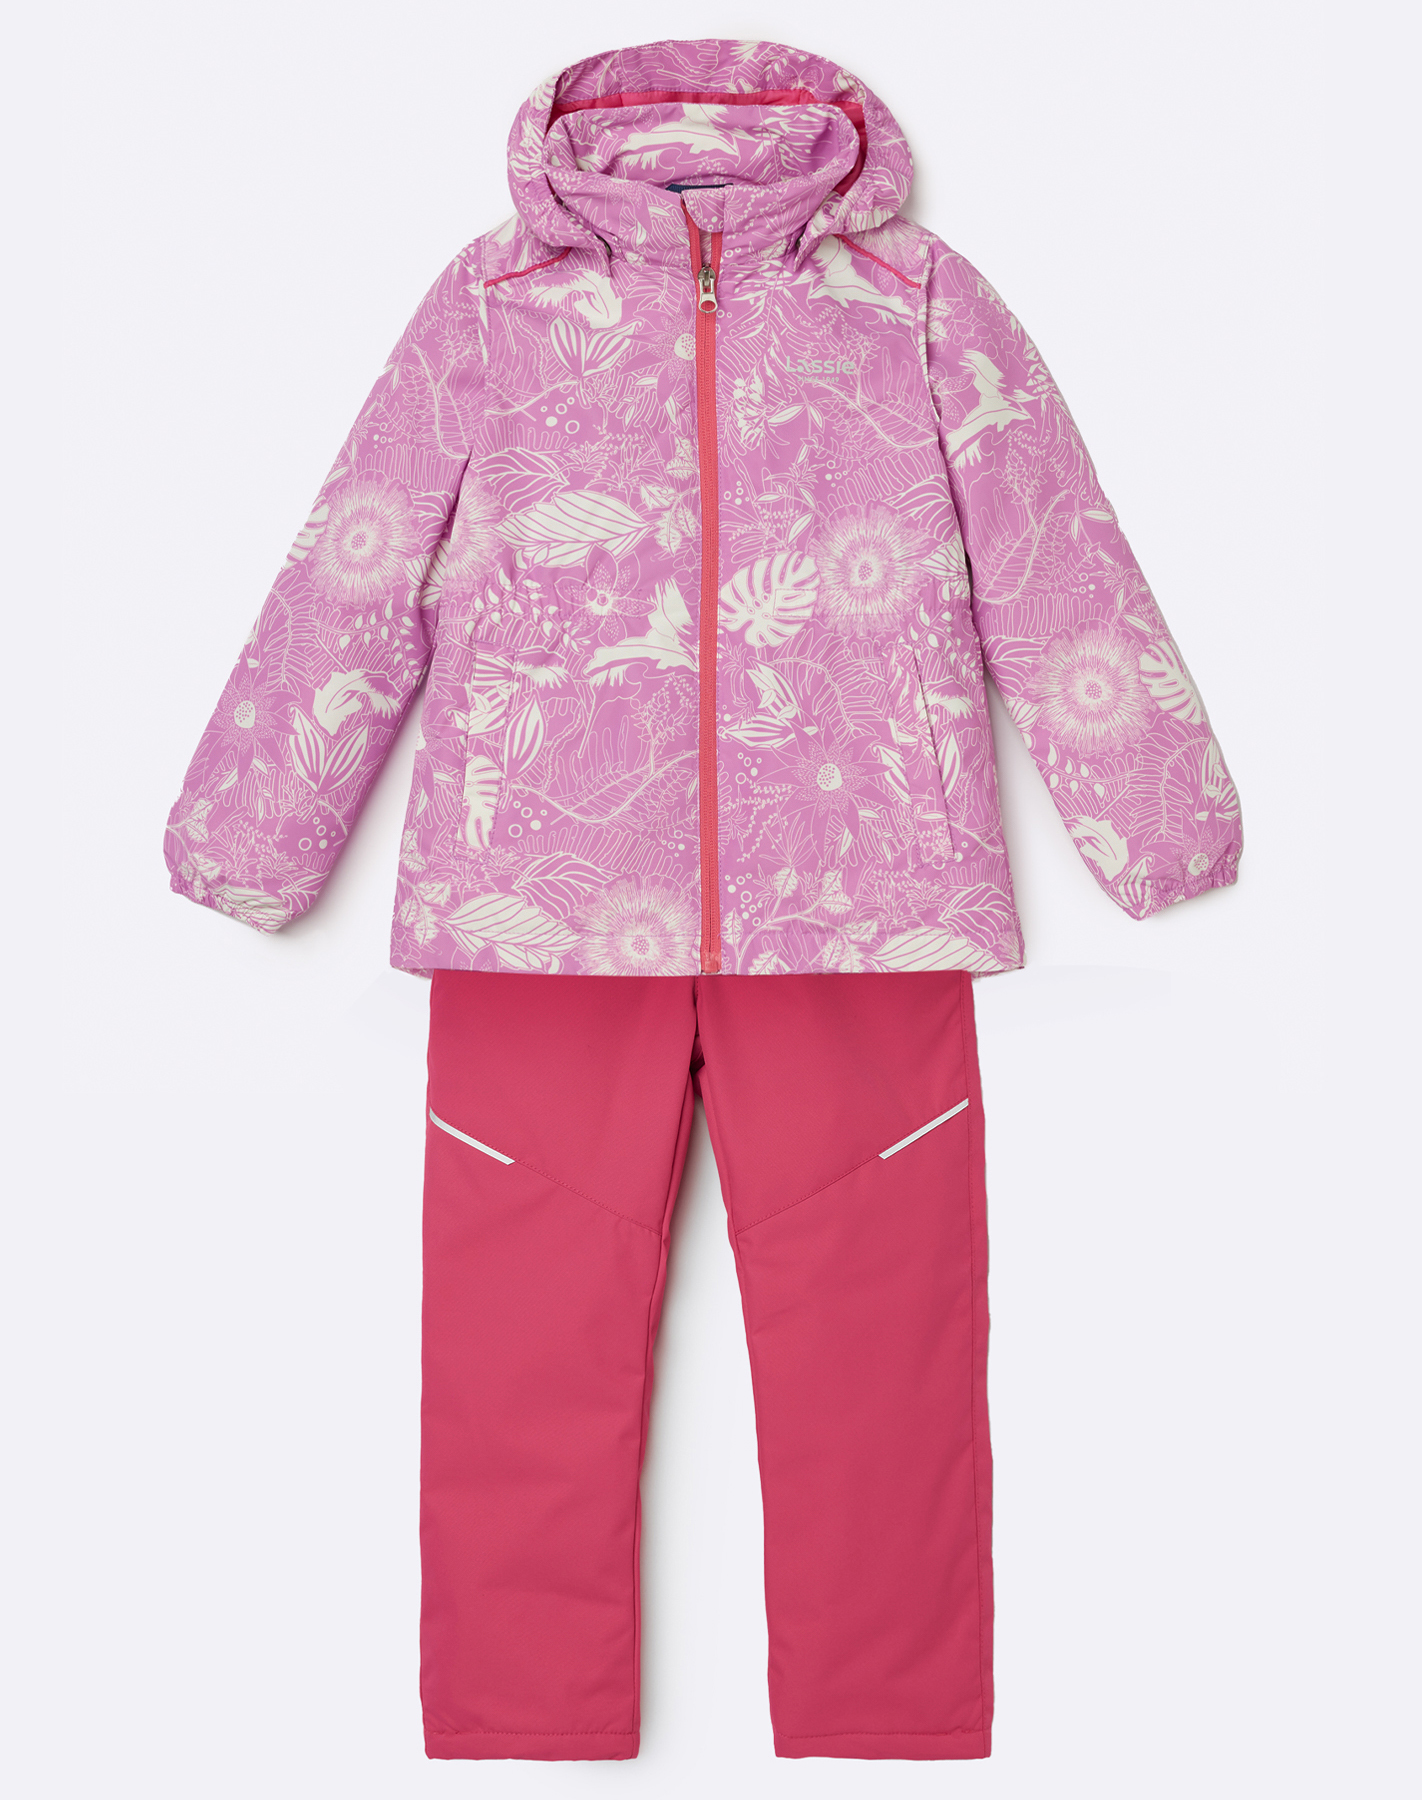 Комплект верхней одежды детский Lassie Manna 7100042A, с рисунком  розовый, 134